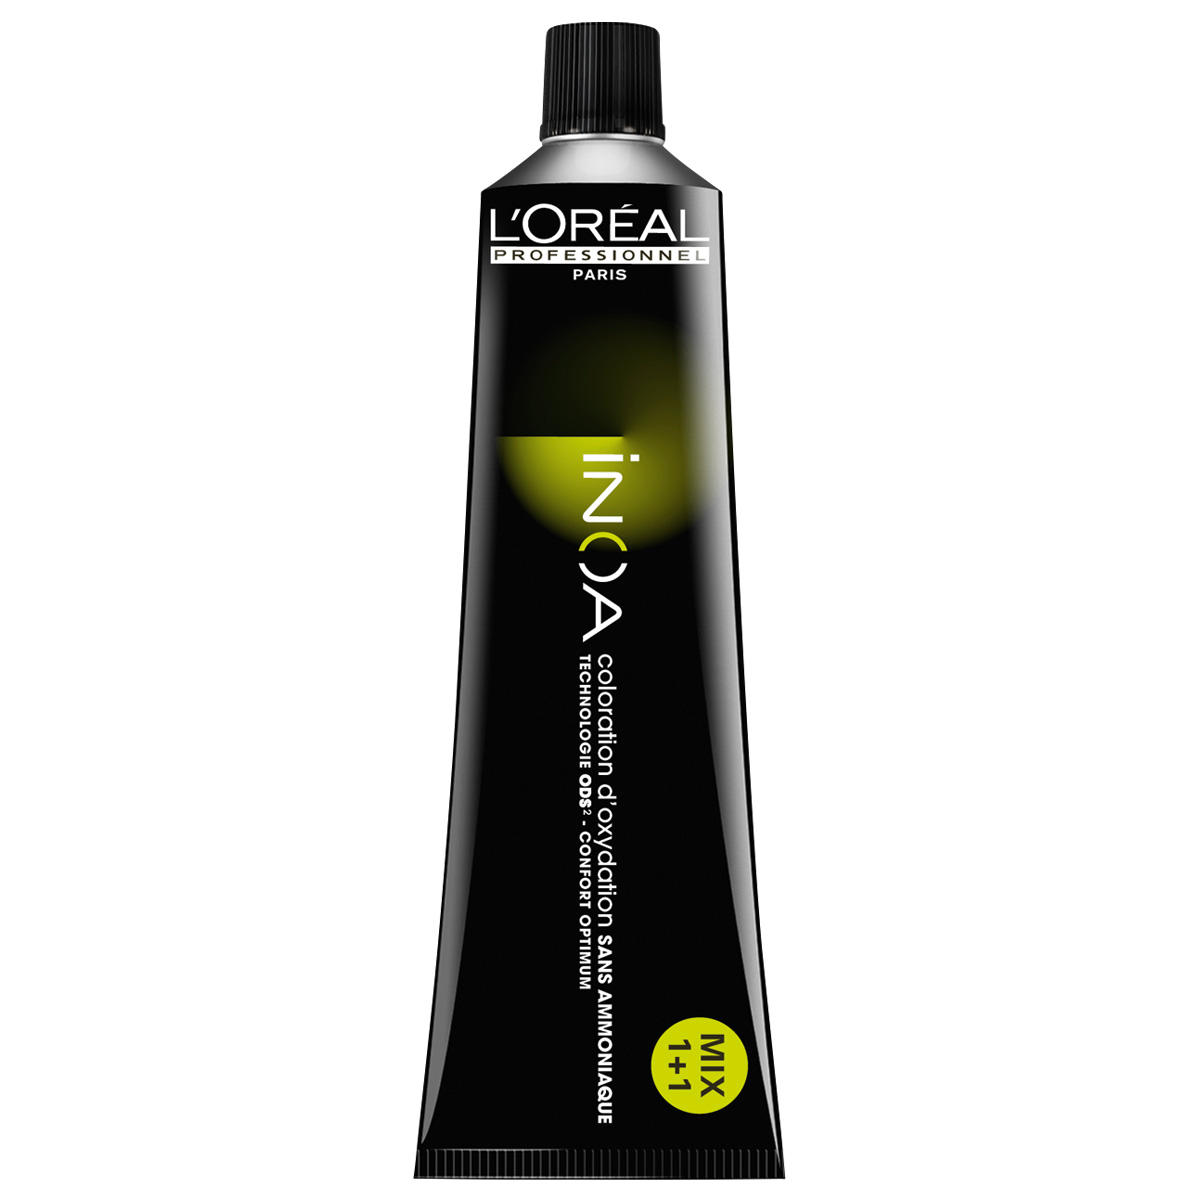 L'Oréal Professionnel Paris Coloration 10,31 Rubio platino ceniza dorada, tubo 60 ml